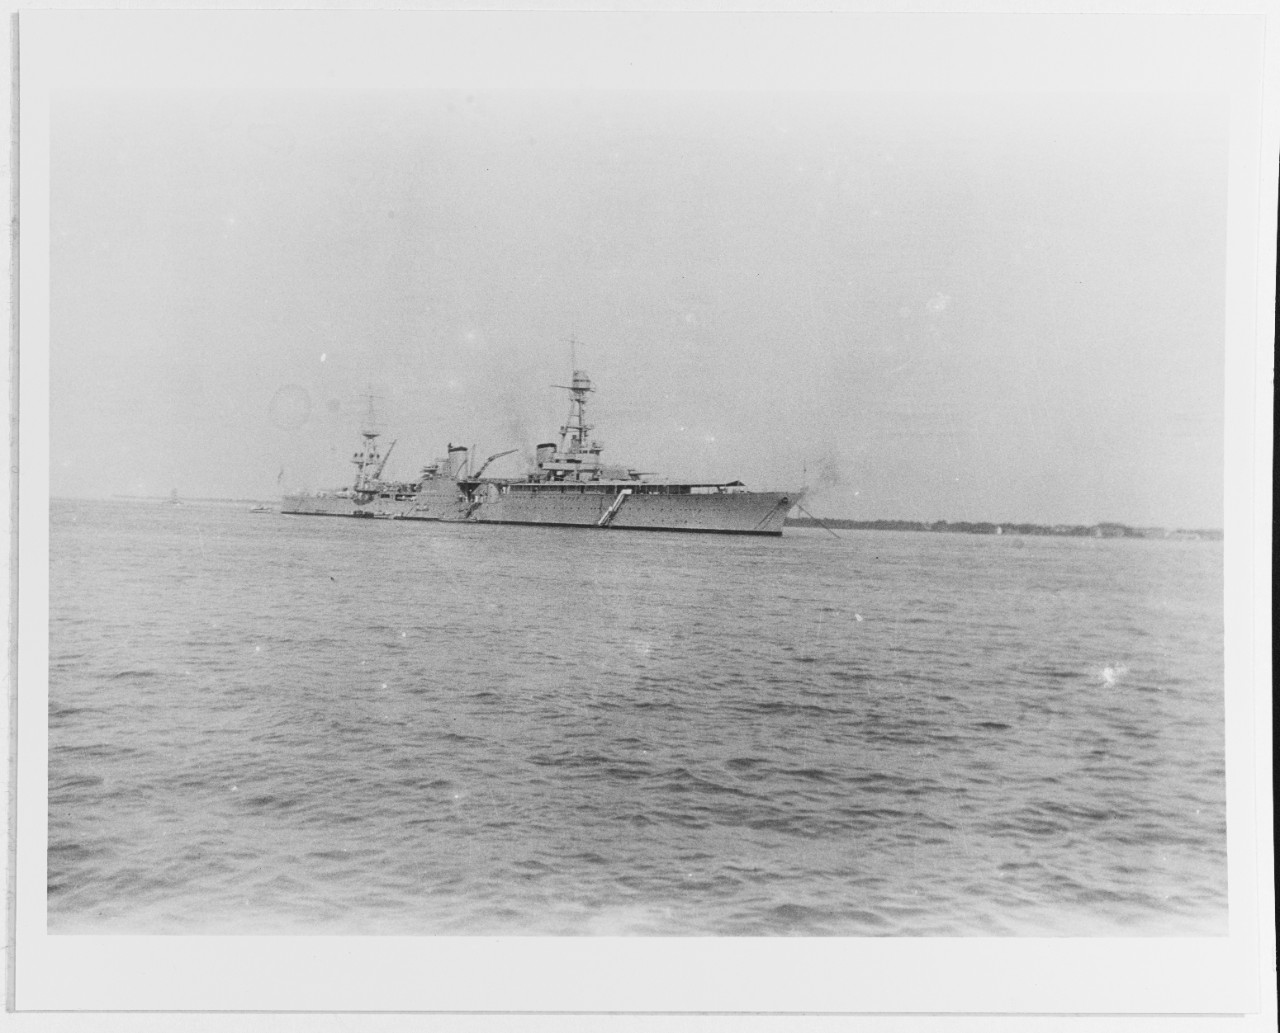 USS HOUSTON (CA-30)